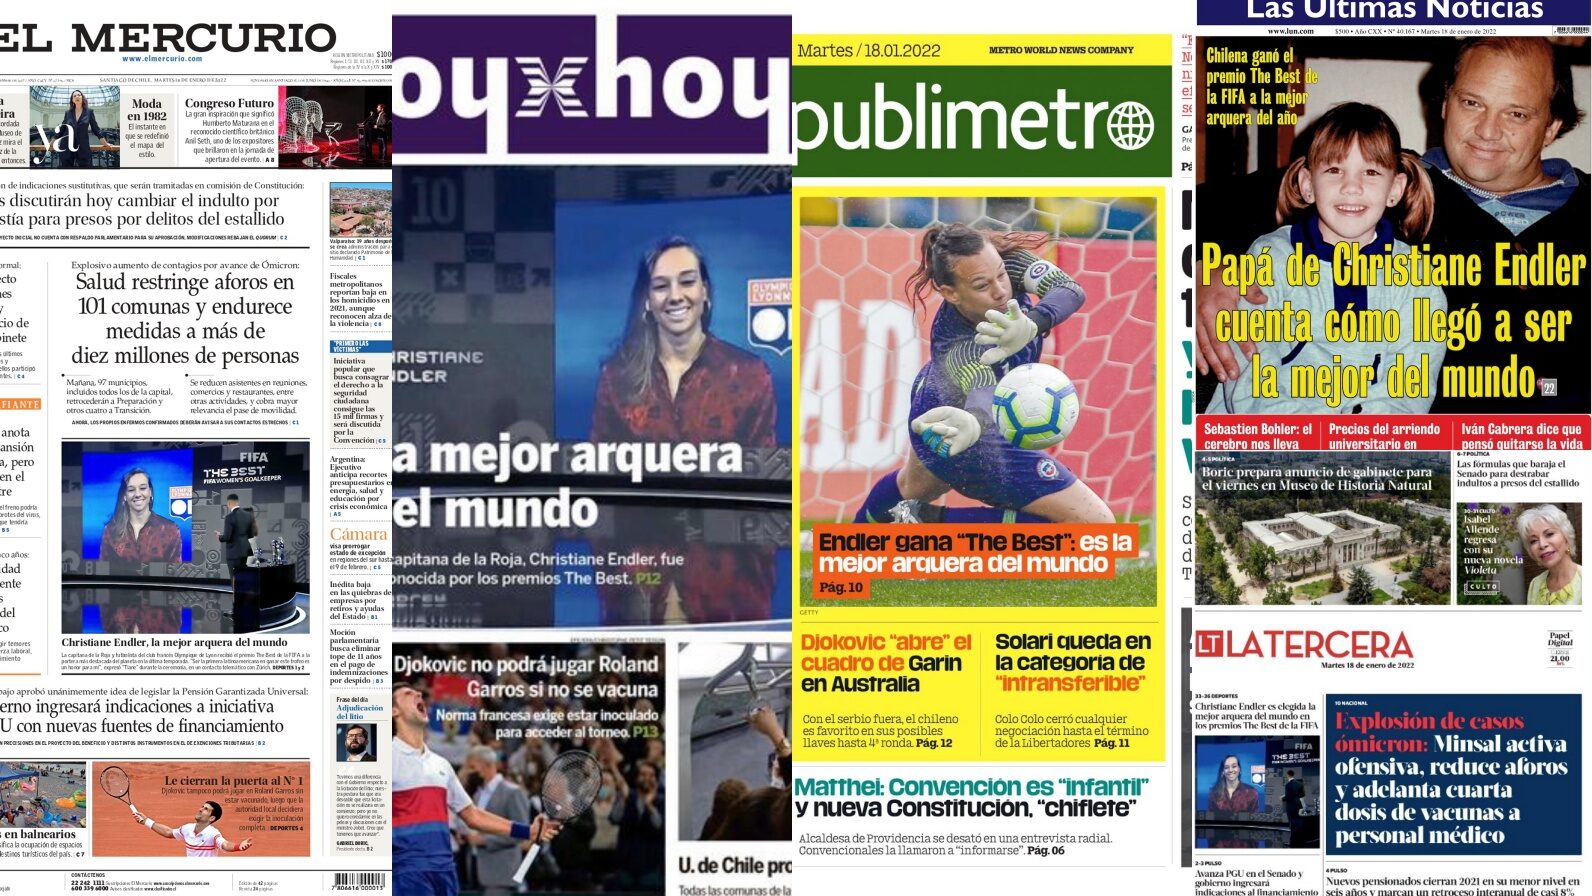 Las portadas de diarios en Chile se entregan al premio The Best de Christiane Endler